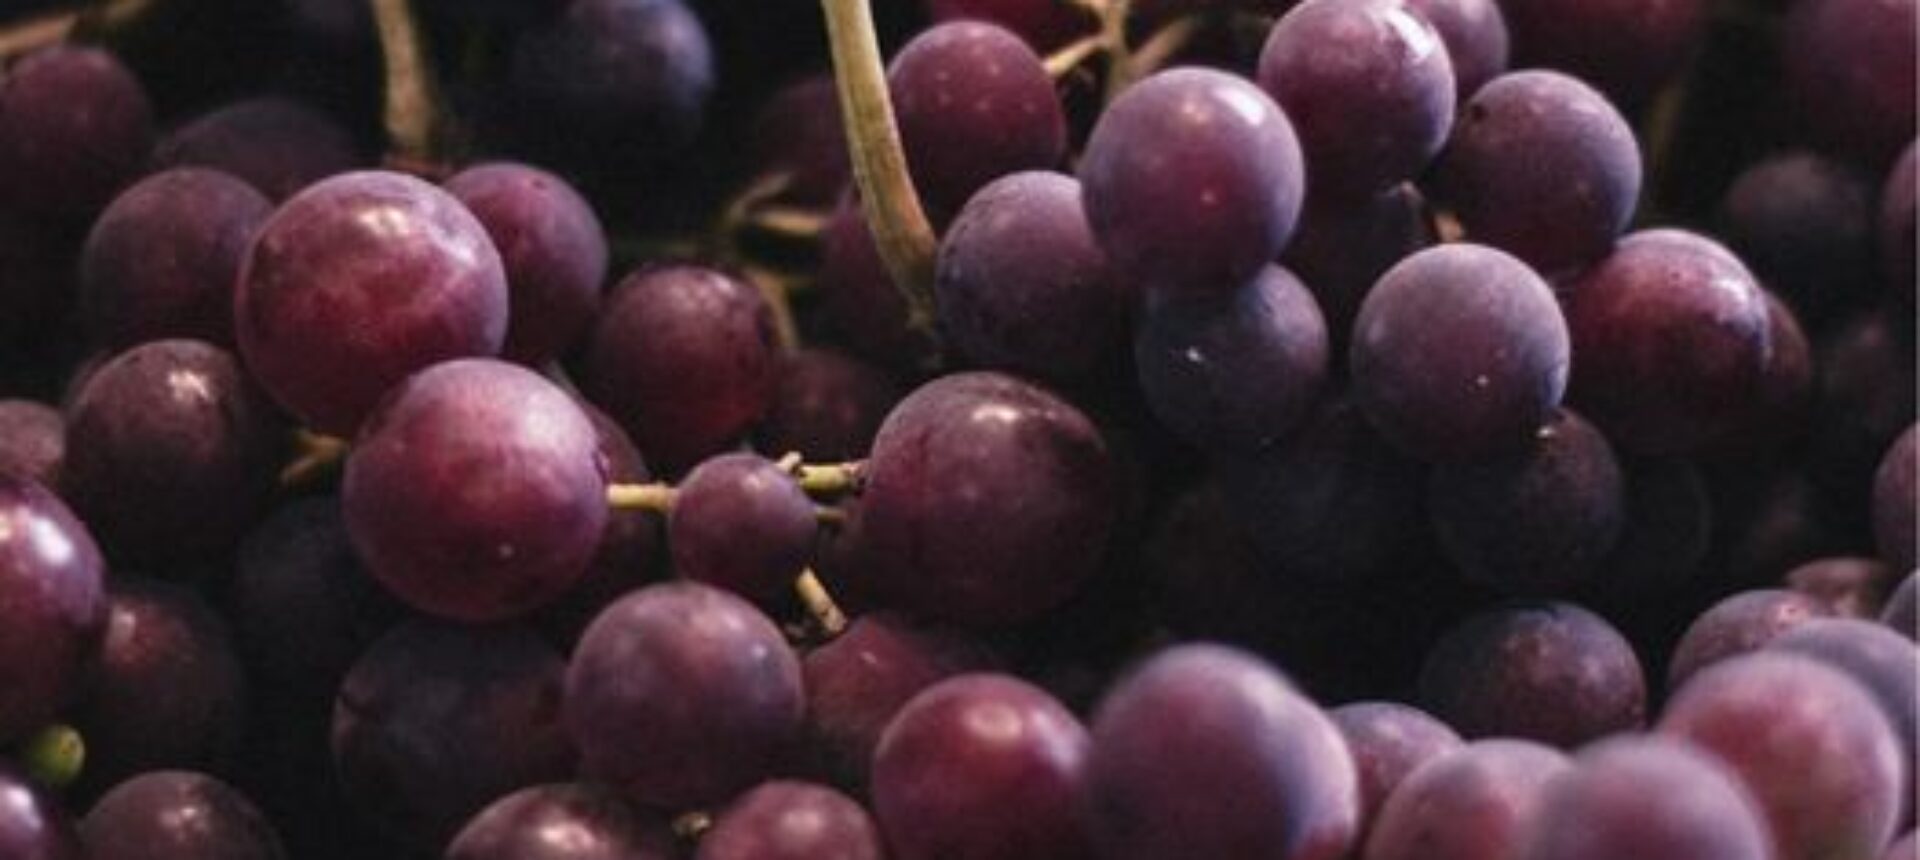 A fine pasto non c’è niente di meglio che un bel grappolo d’uva!